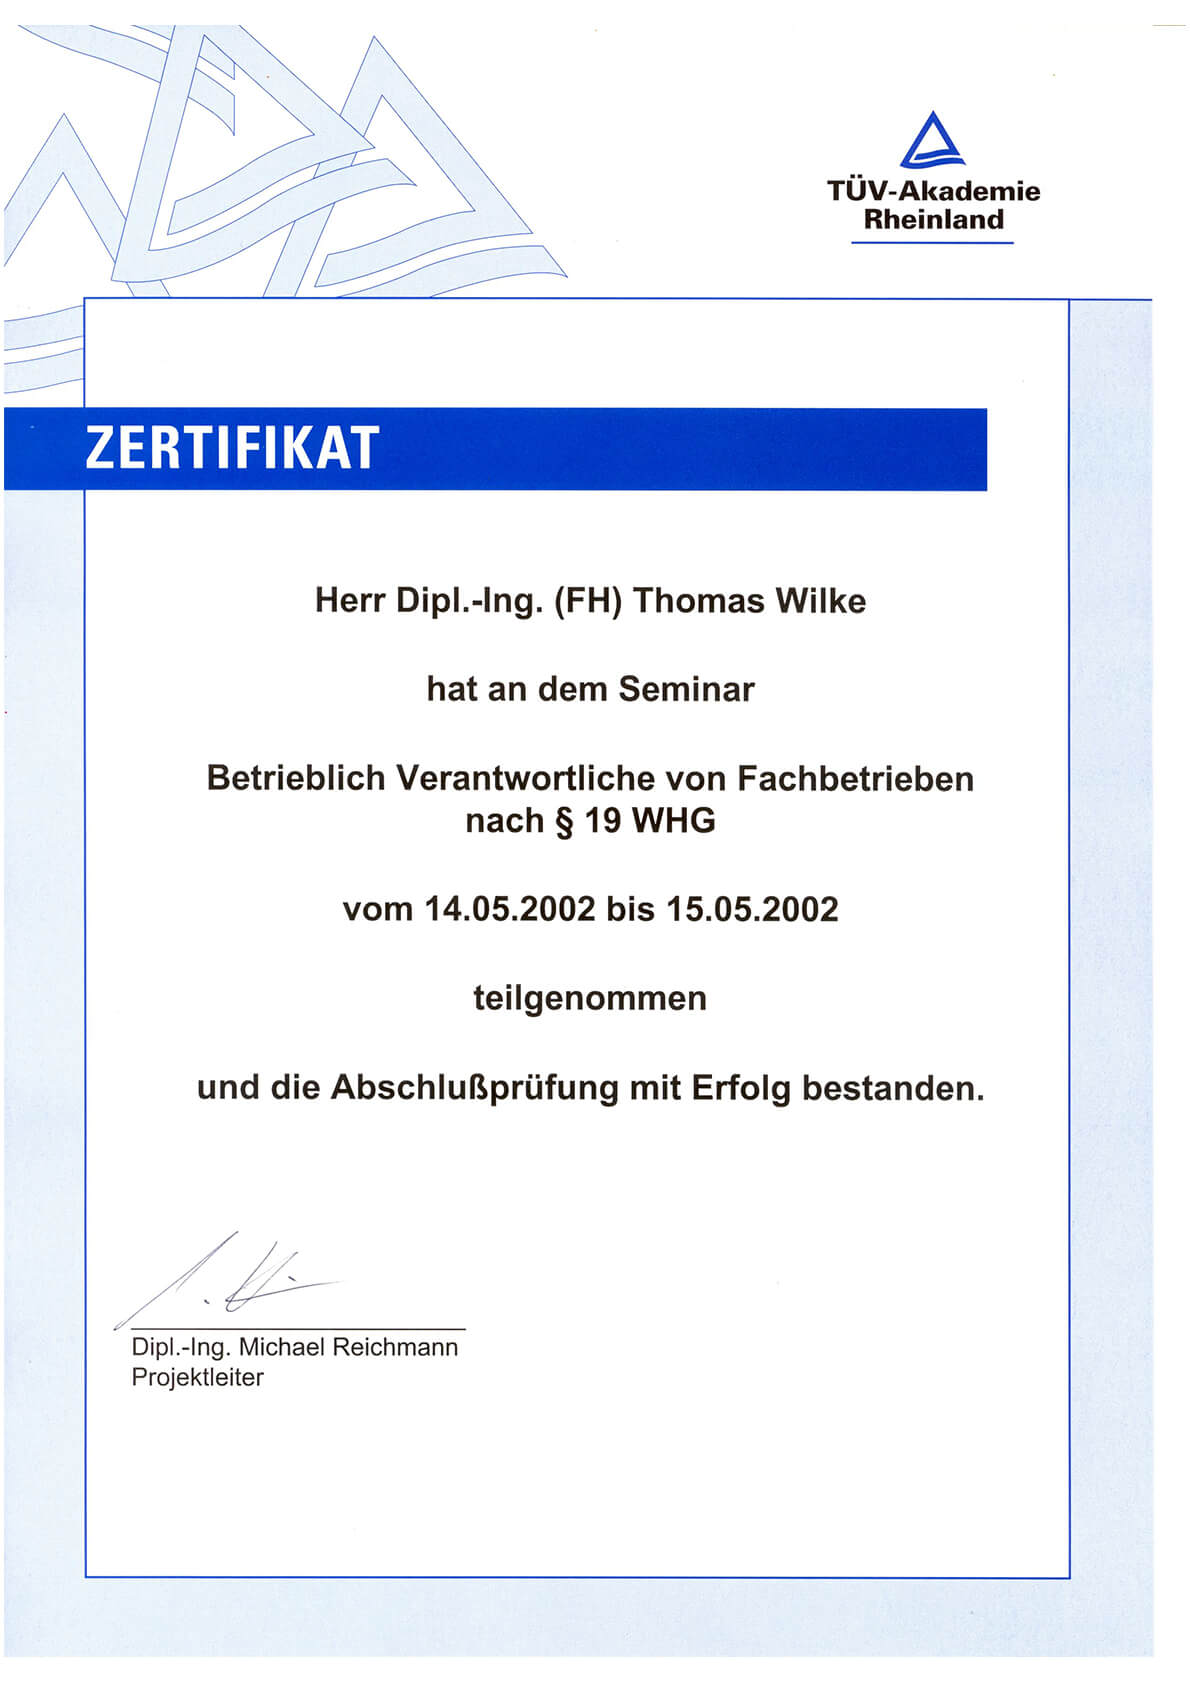 Zertifikat "Betrieblich Verantwortliche von Fachbetrieben nach § 19 WHG"  (Dipl.-Ing. Thomas Wilke)